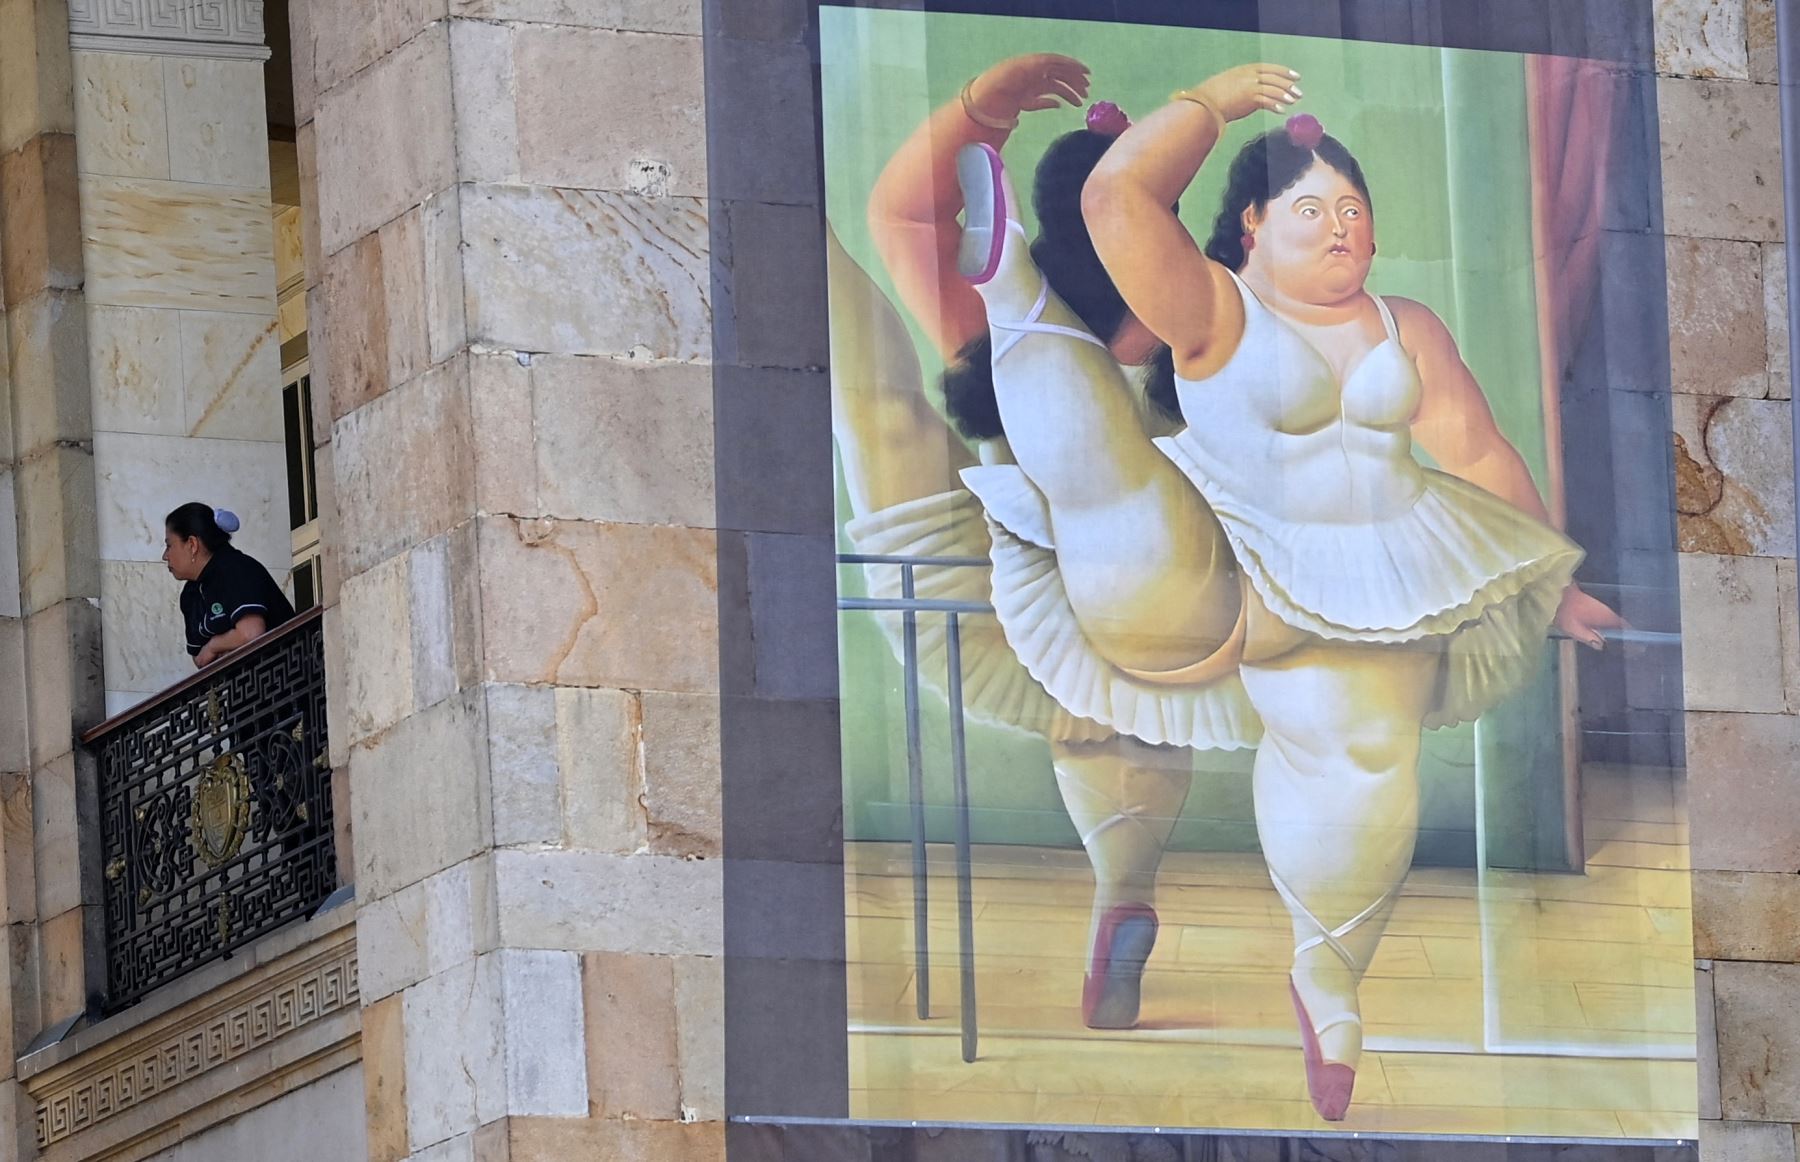 Una pintura del pintor y escultor colombiano Fernando Botero, quien murió a los 91 años el 15 de septiembre, se exhibe en la fachada del Congreso en Bogotá mientras sus restos descansan en la capilla funeraria ubicada en el edificio.
Foto: AFP